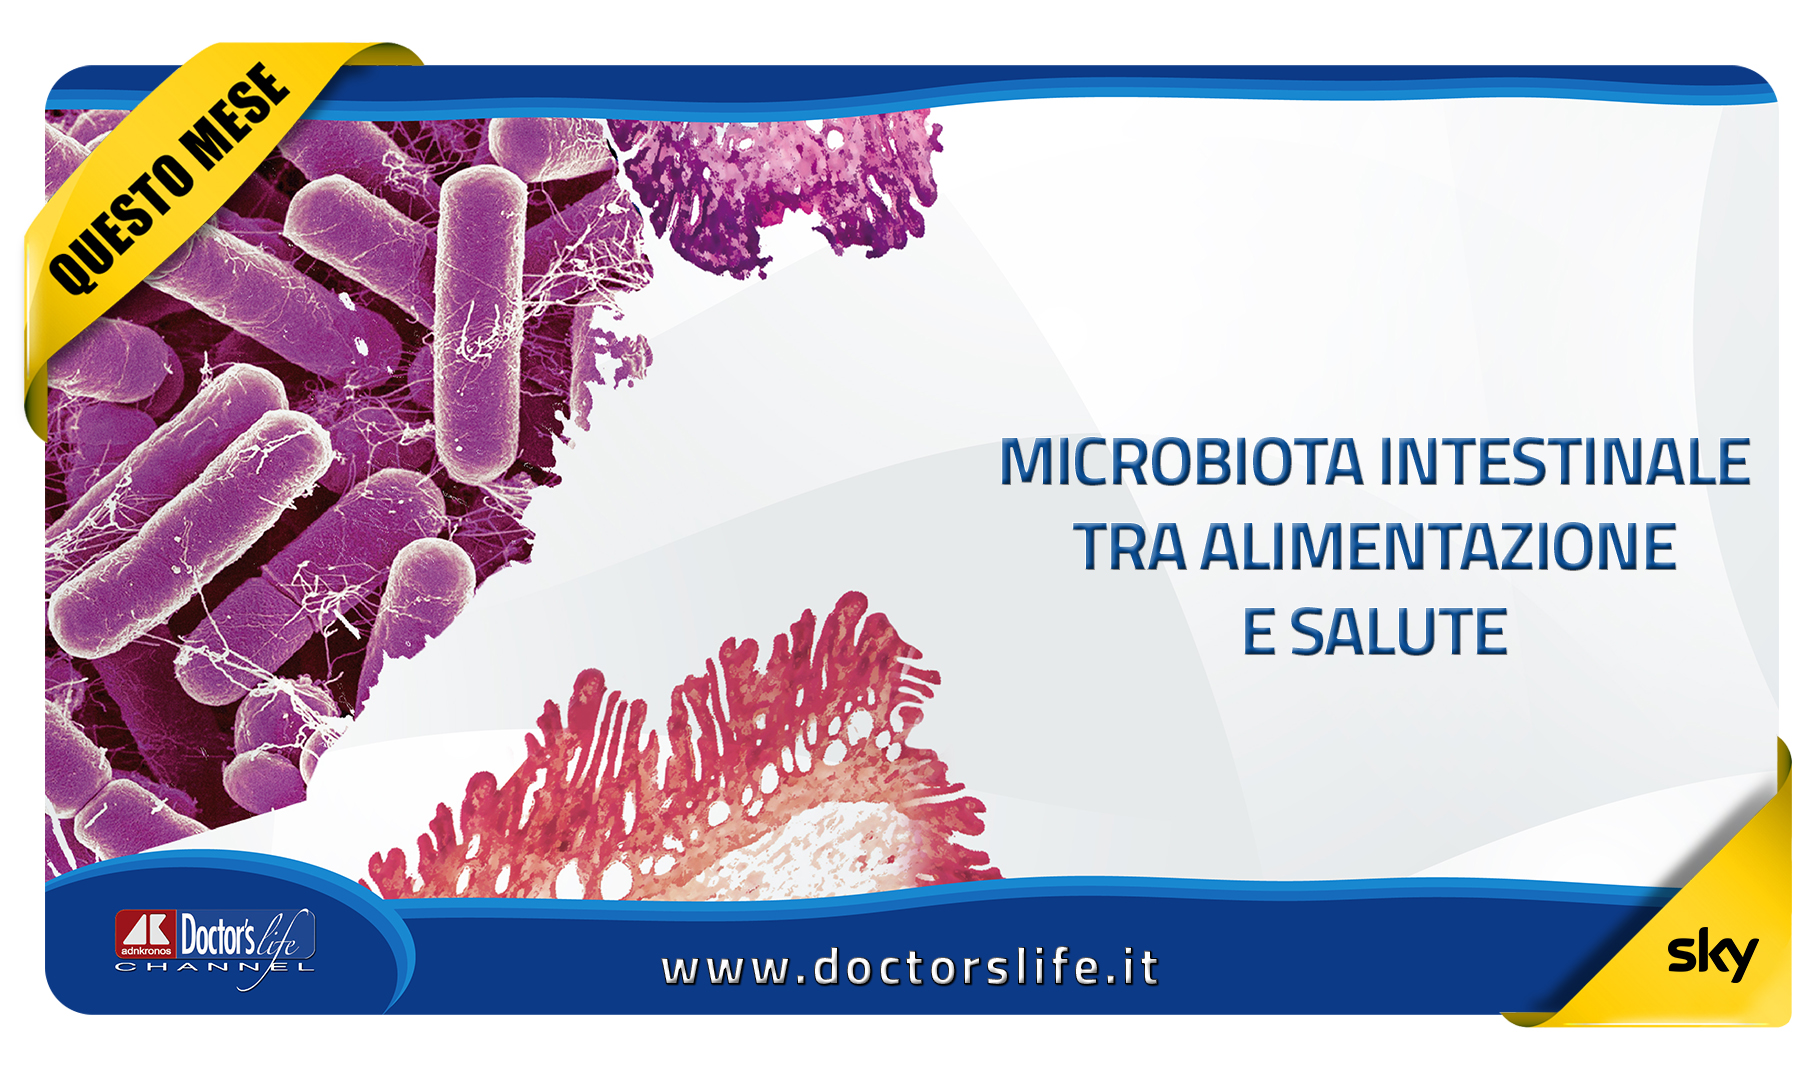 Microbiota intestinale tra alimentazione e salute